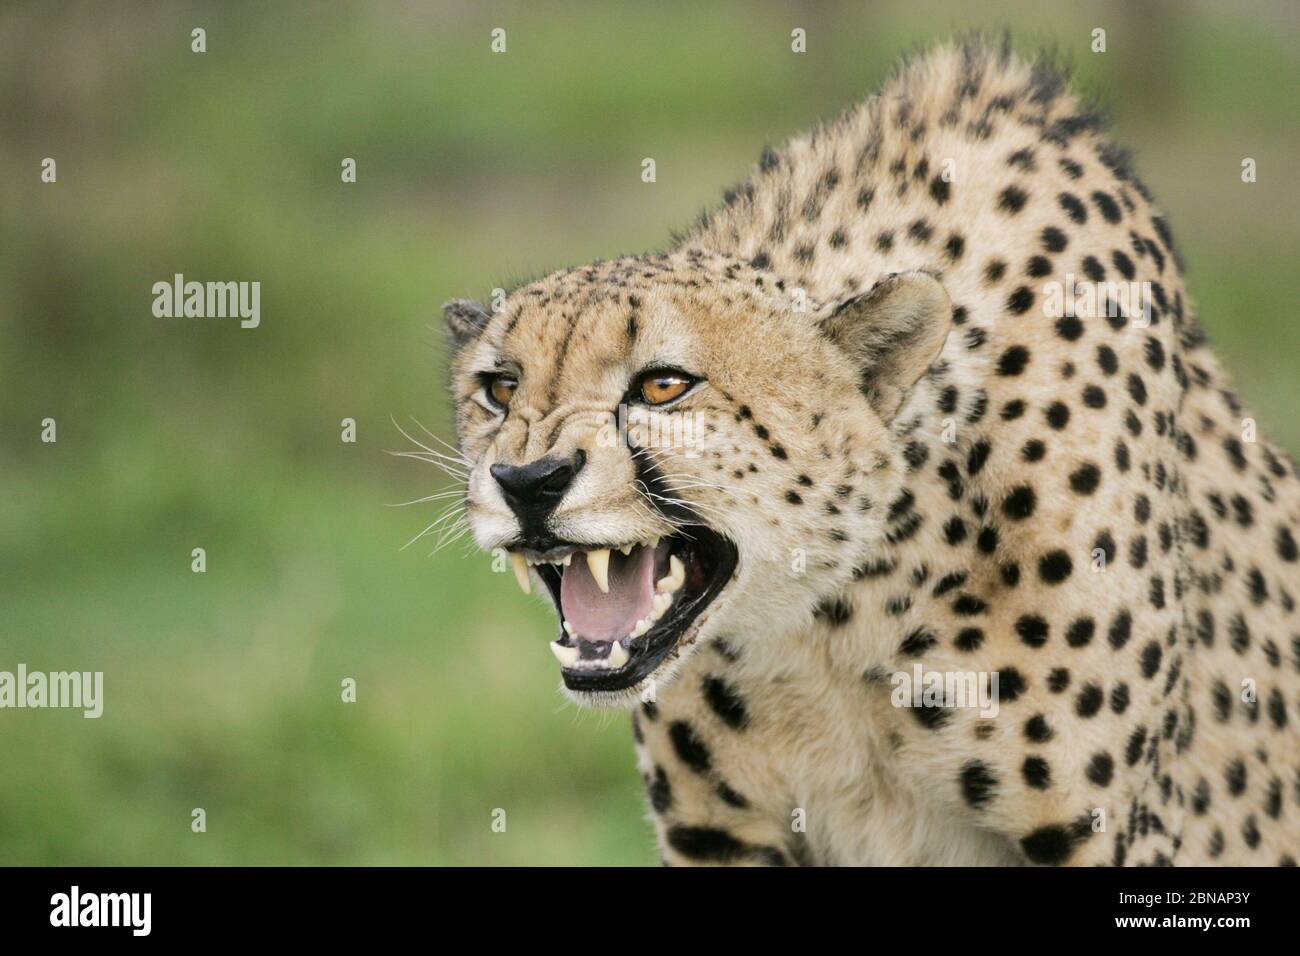 Ein Erwachsener, männlicher Afrikanischer Geparde, knurrend und aggressives Verhalten zeigend Kruger Park Südafrika Stockfoto